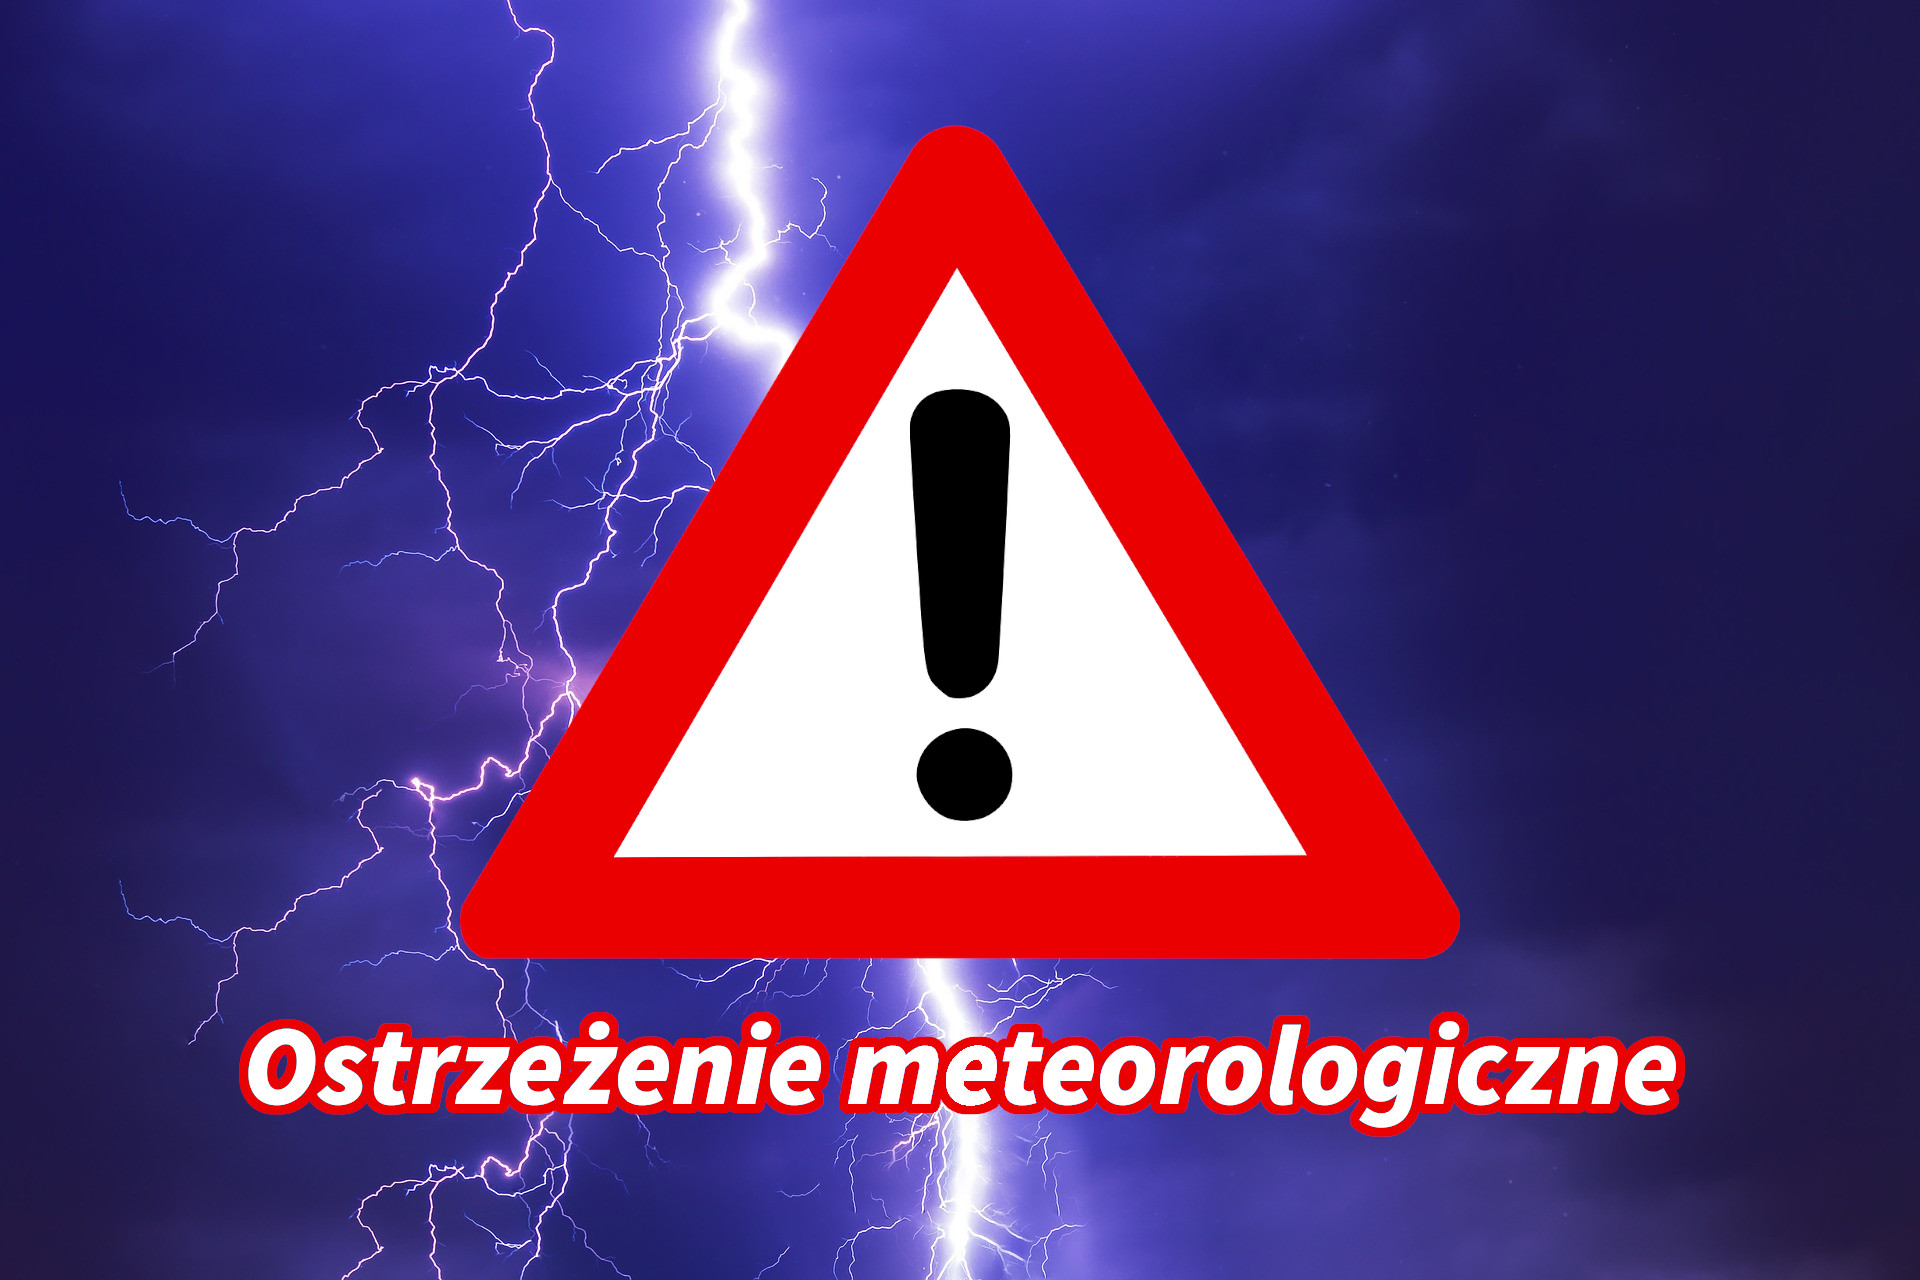 Ostrzeżenia meteorologiczne zbiorczo nr 259 - Burze/Upał